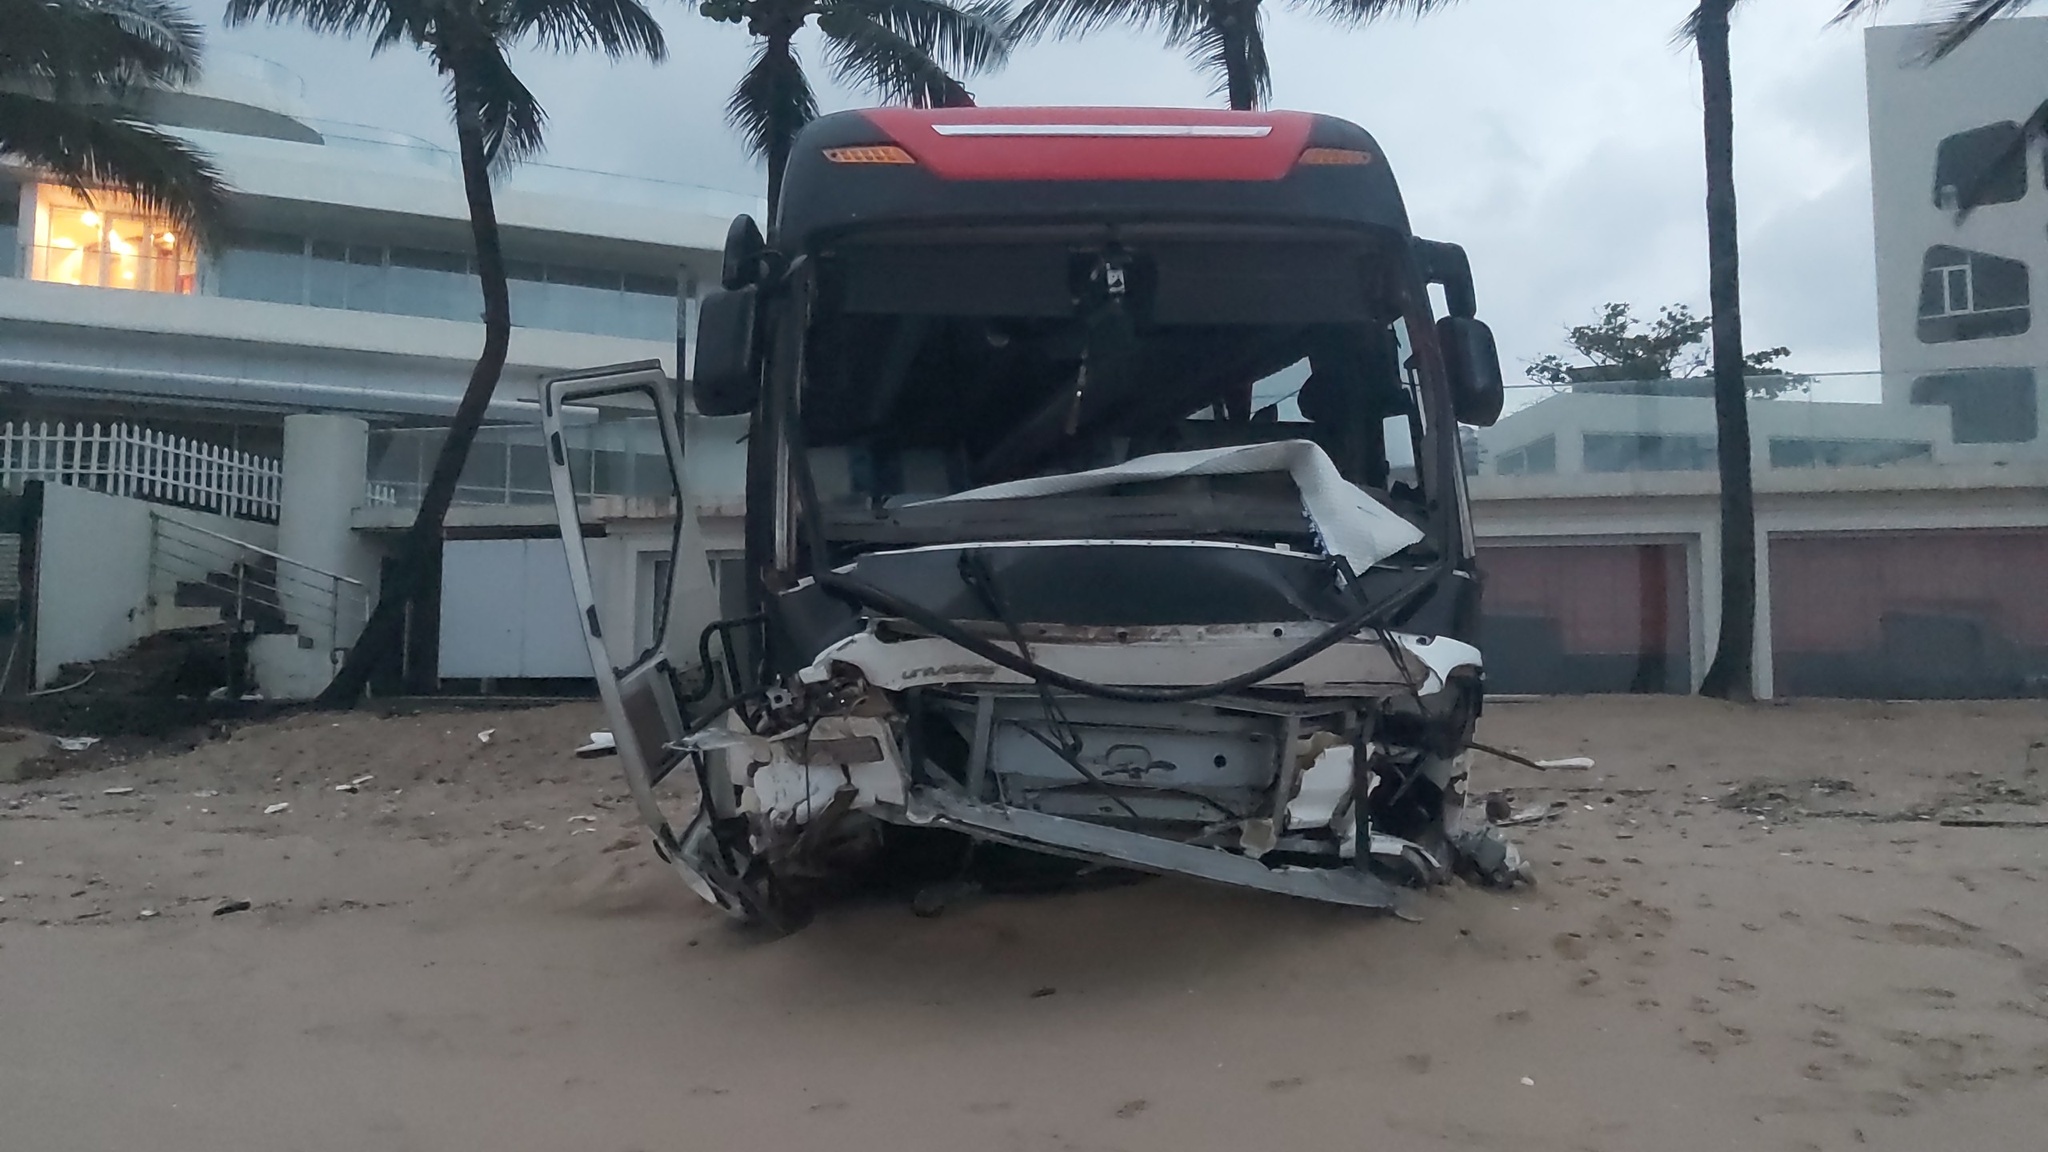 Tai nạn ở Phú Quốc: Xe khách 46 chỗ tông bể rào chắn, suýt lao xuống biển - ảnh 2